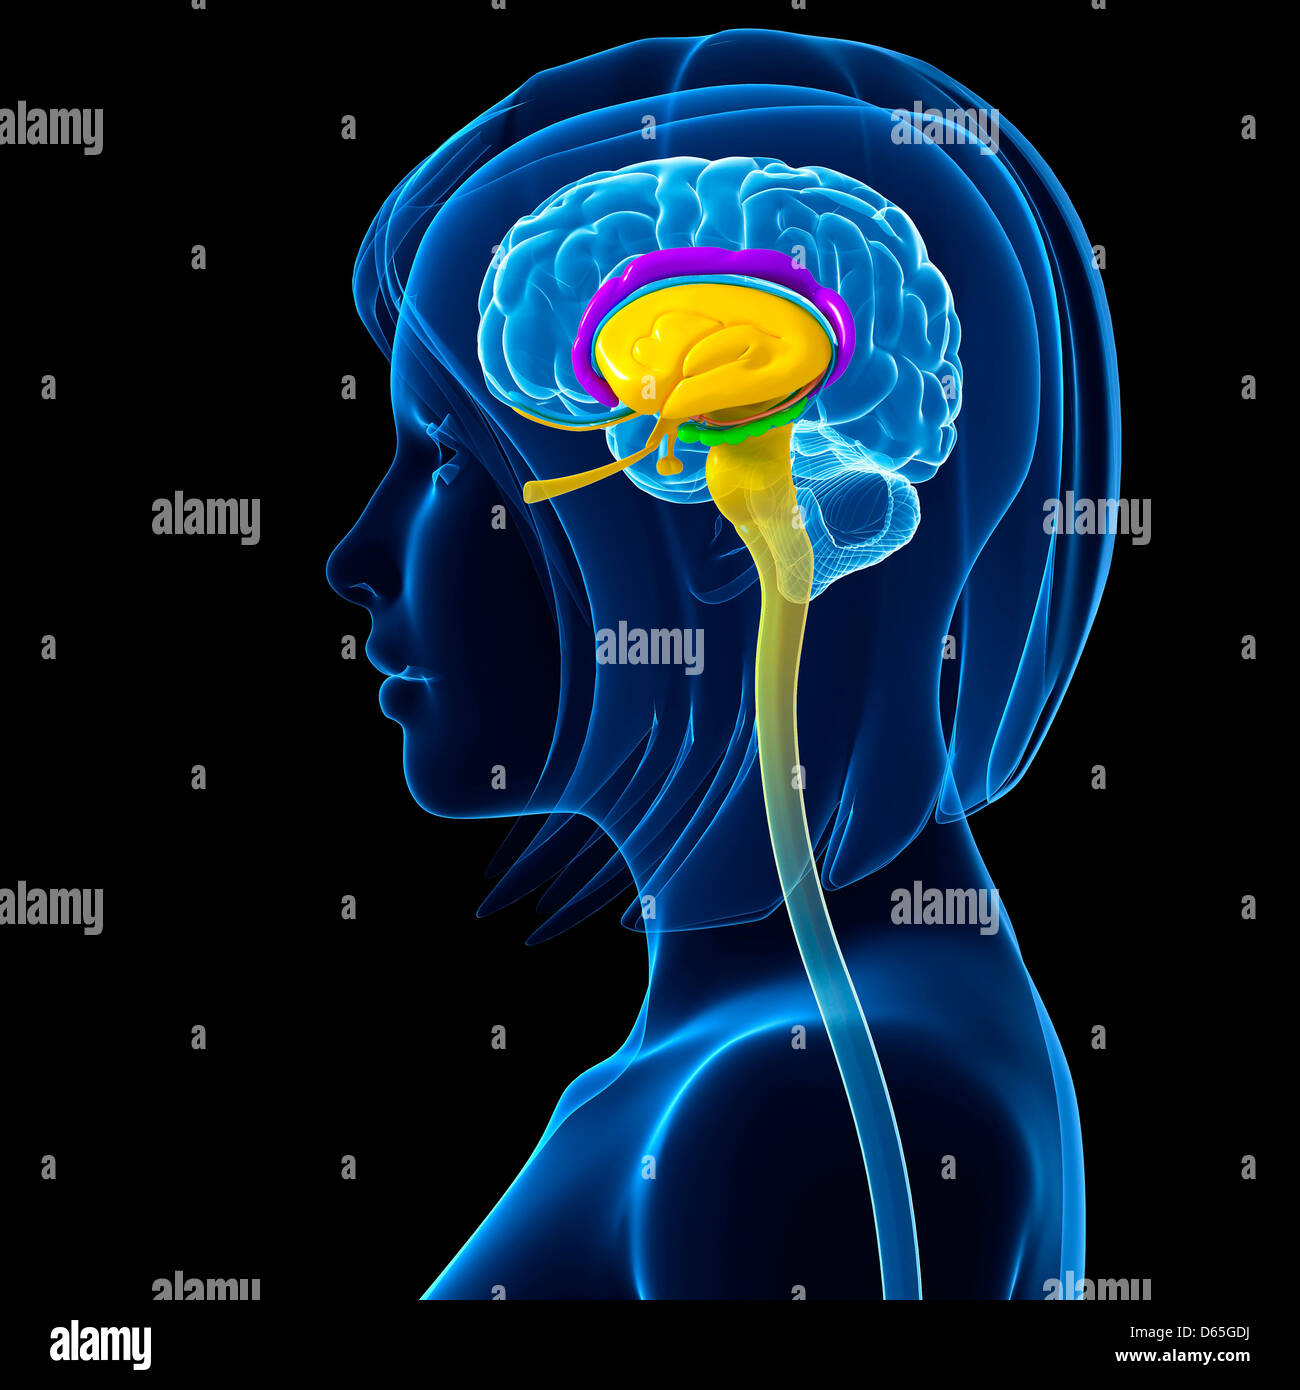 Brain anatomy, artwork Stock Photo